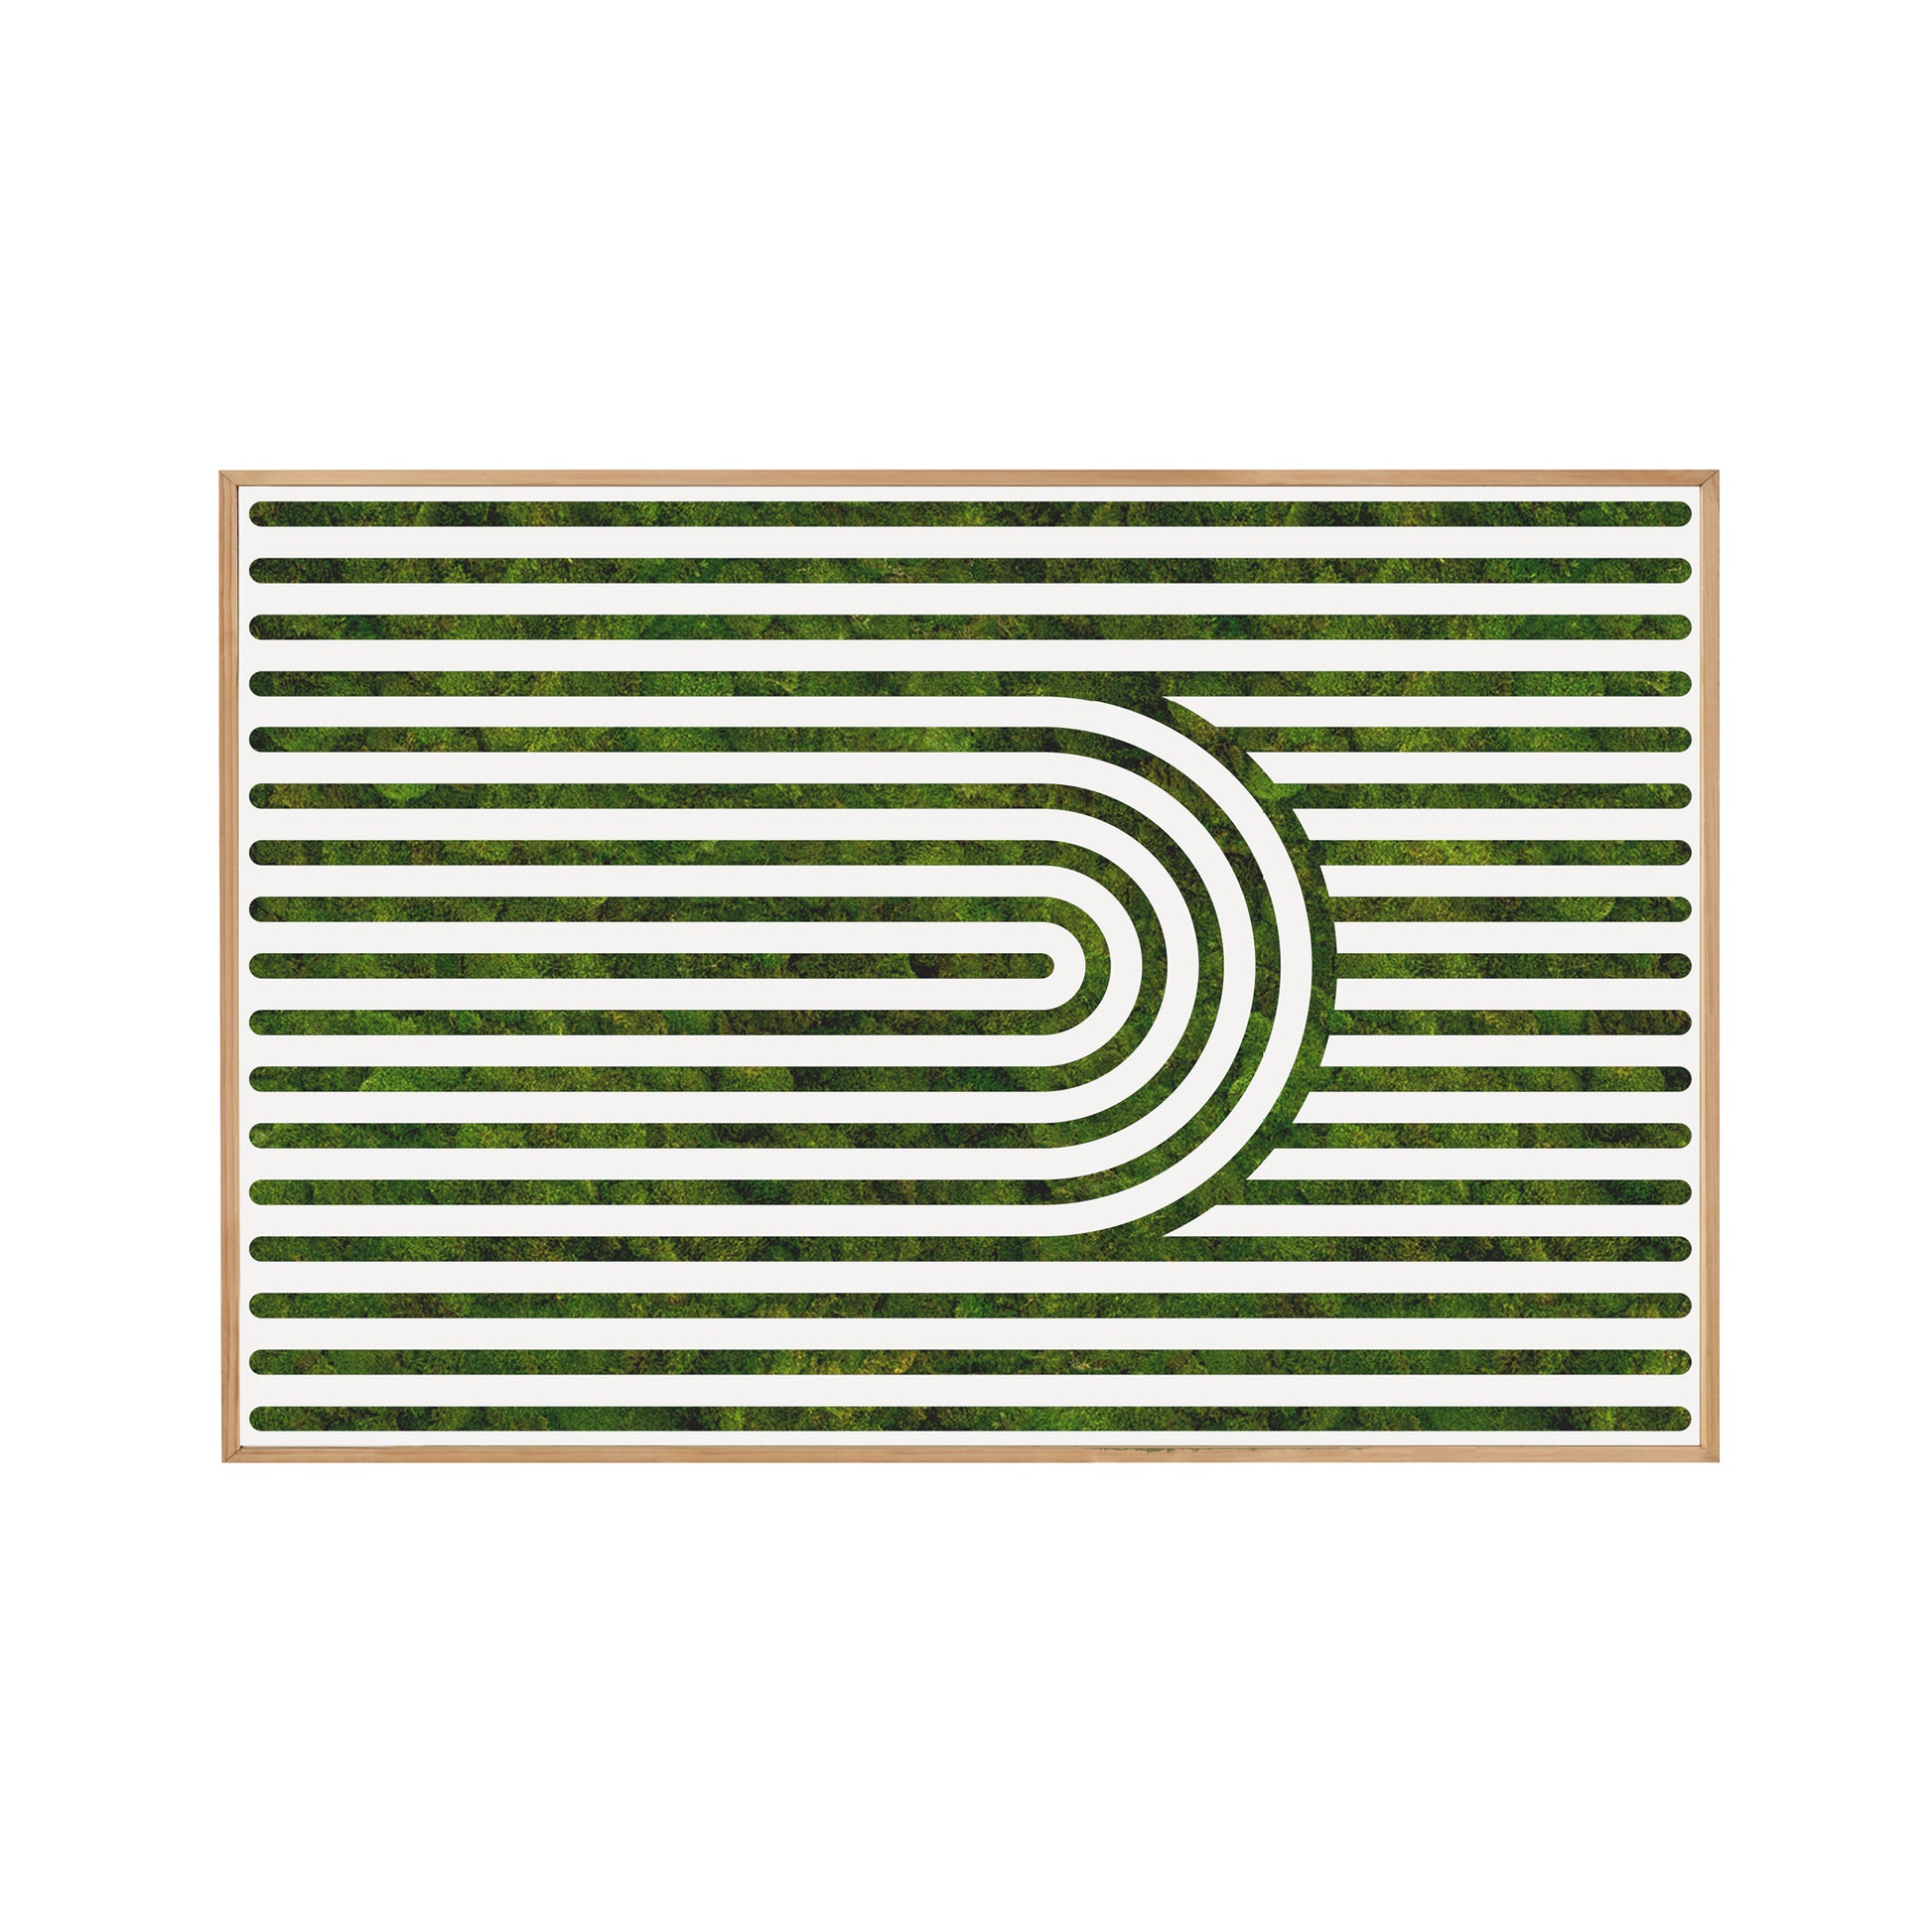 Moss Art - Optical Series No. 004 (6'x 4')